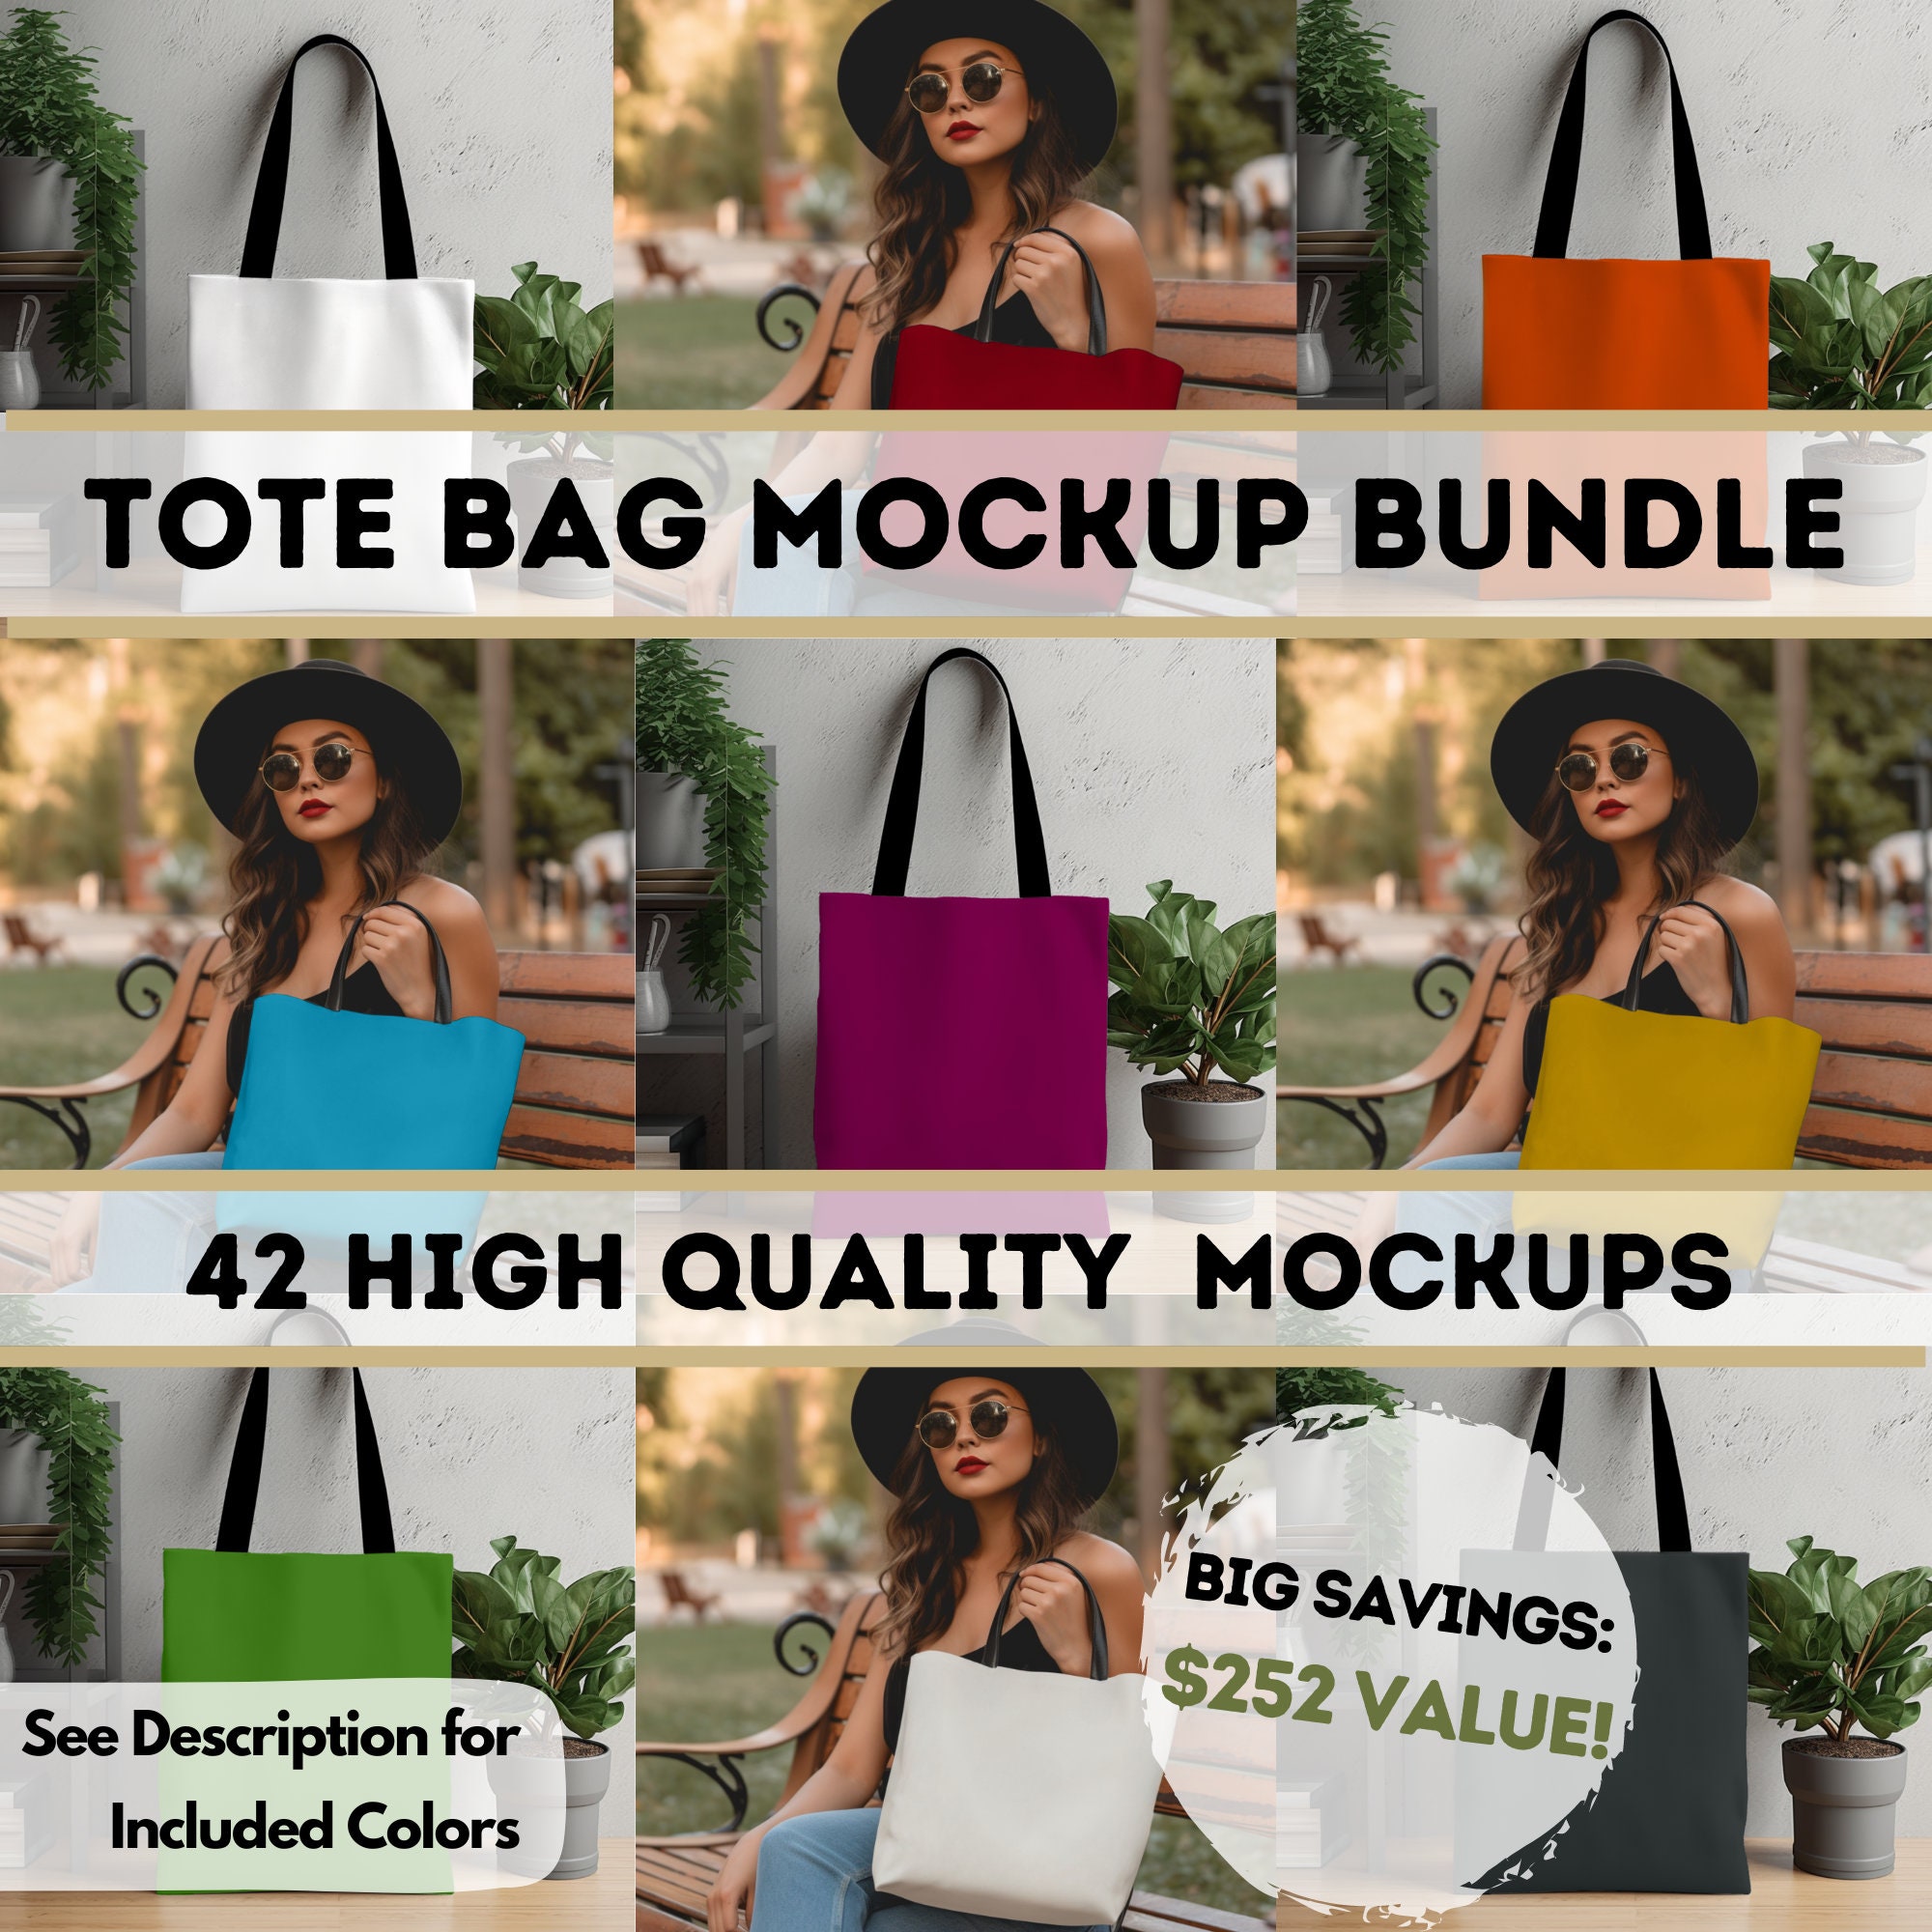 Tote Mockup Black Shopping Bag Mock Up Gift Mockup Teacher Mock-up SVG Mock  up Sublimation Bag Mock Up Digital Download Jpg